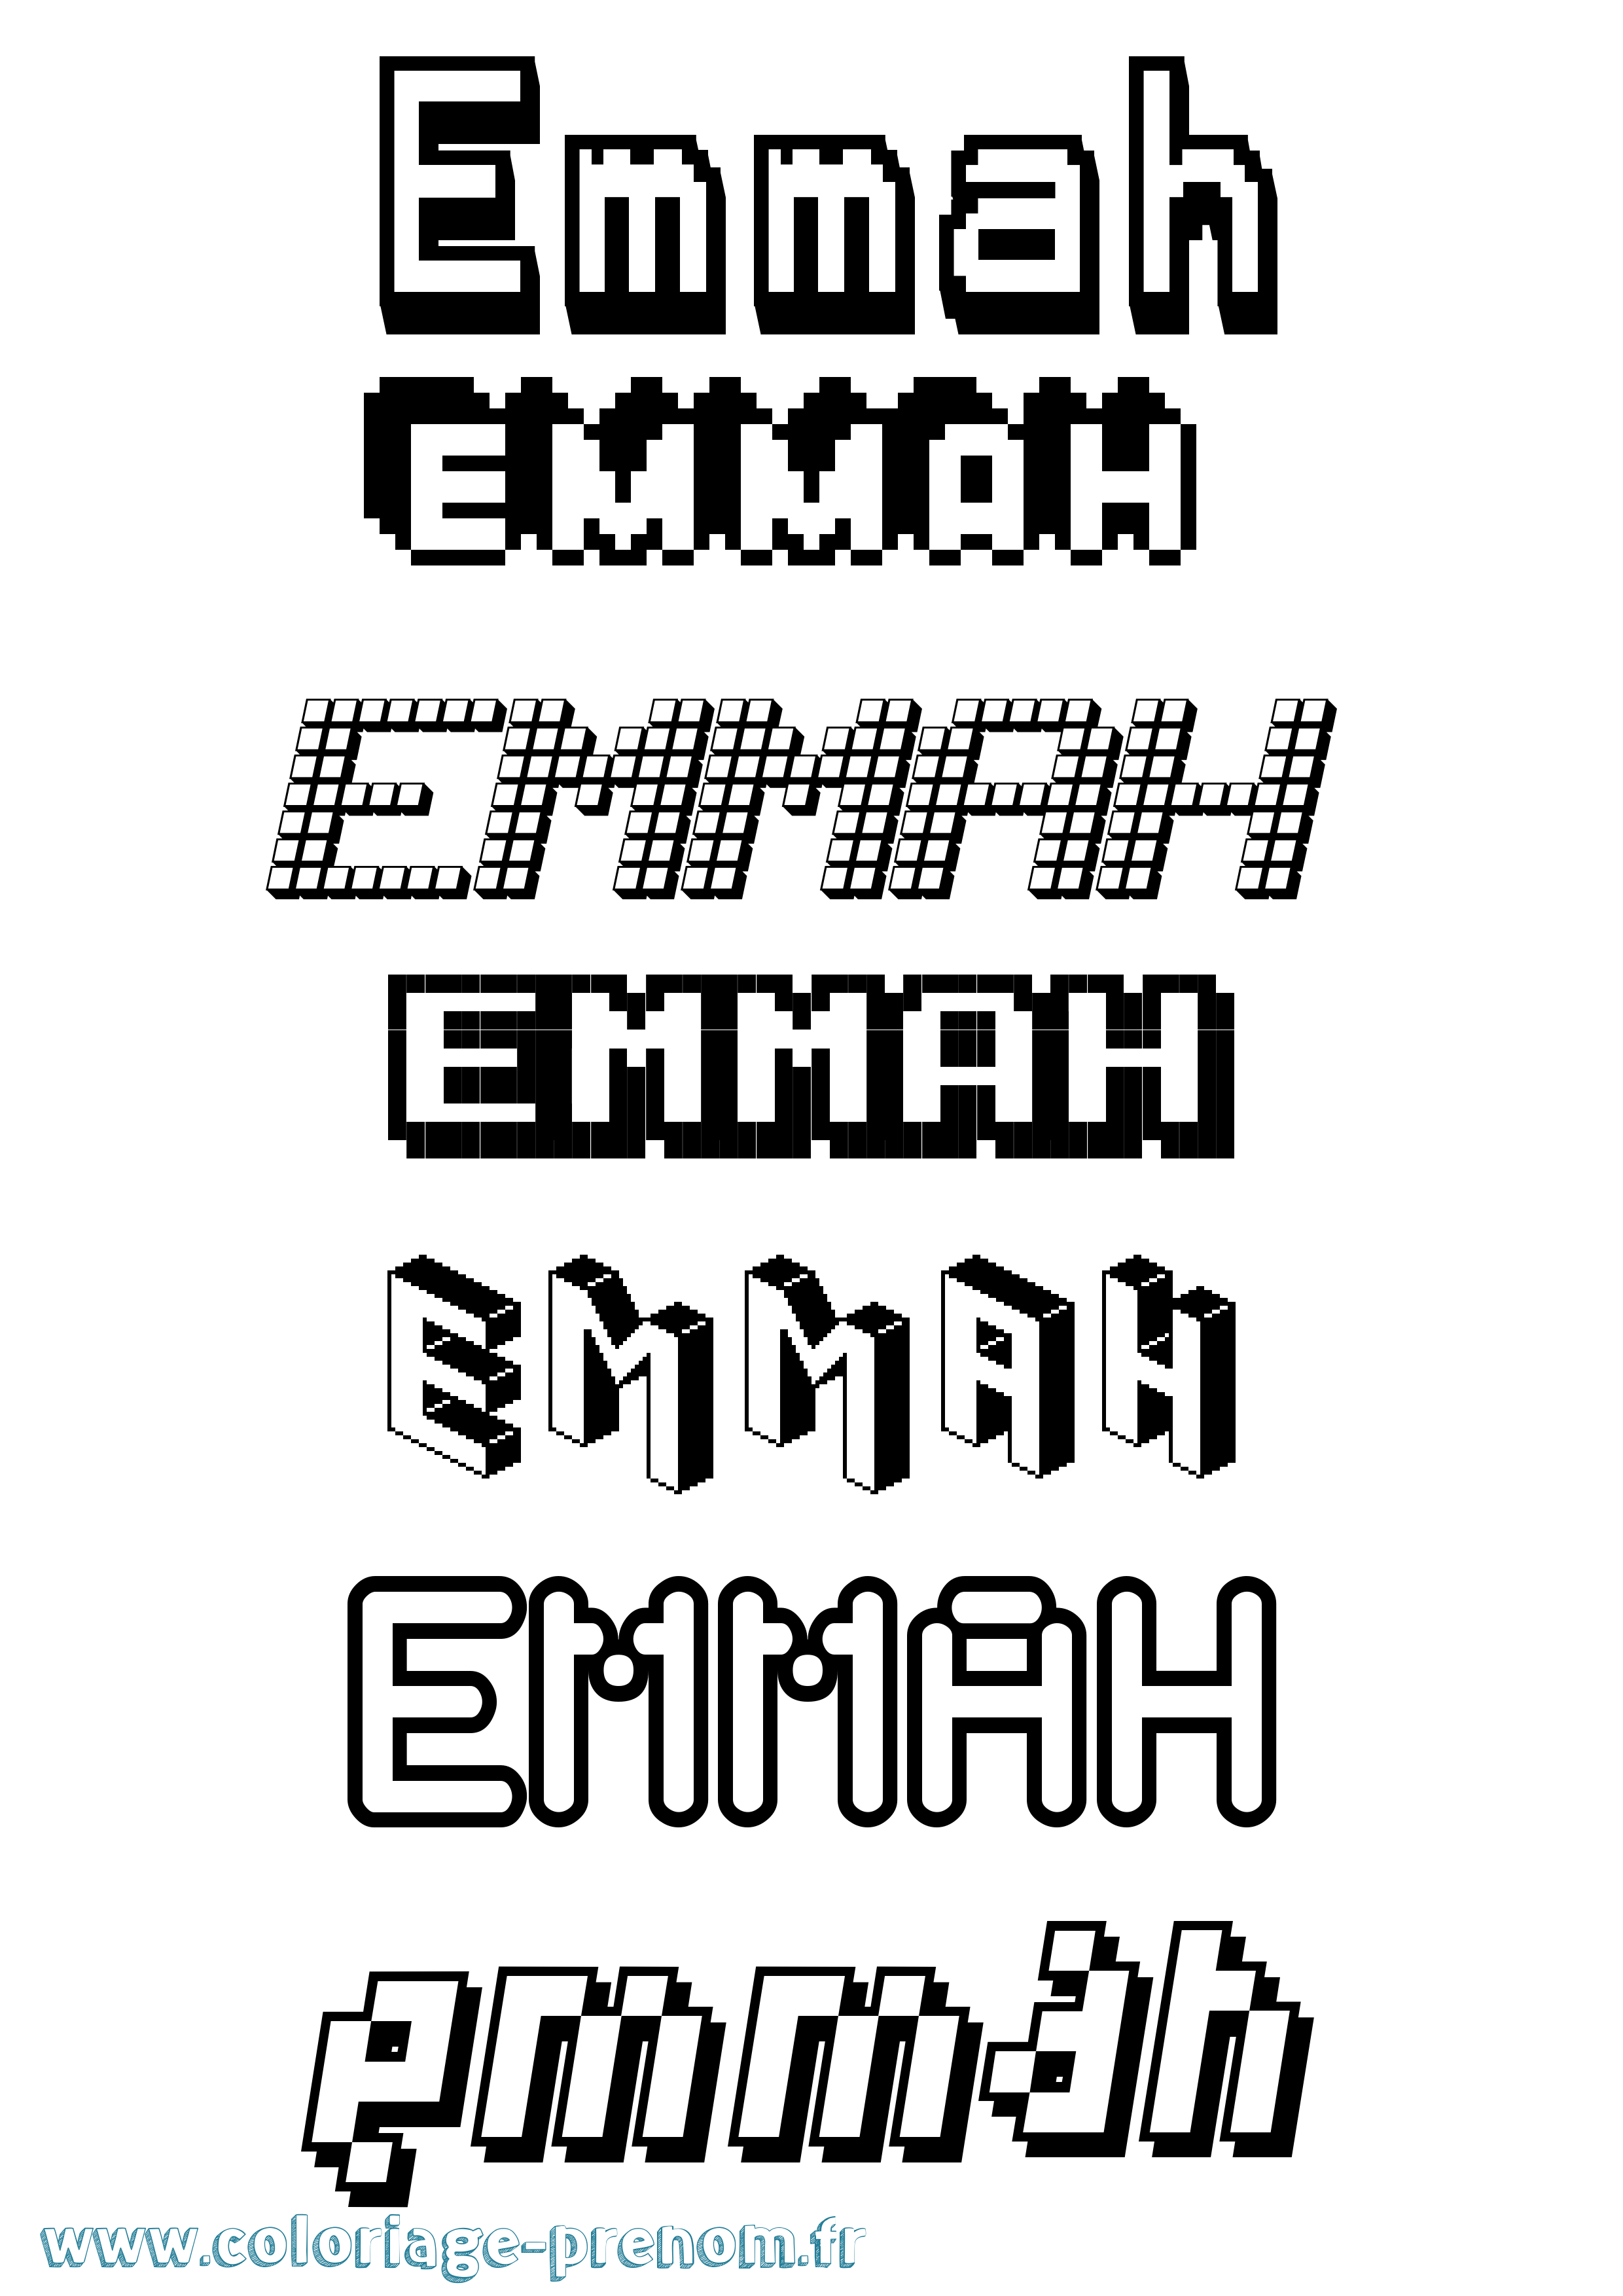 Coloriage prénom Emmah Pixel